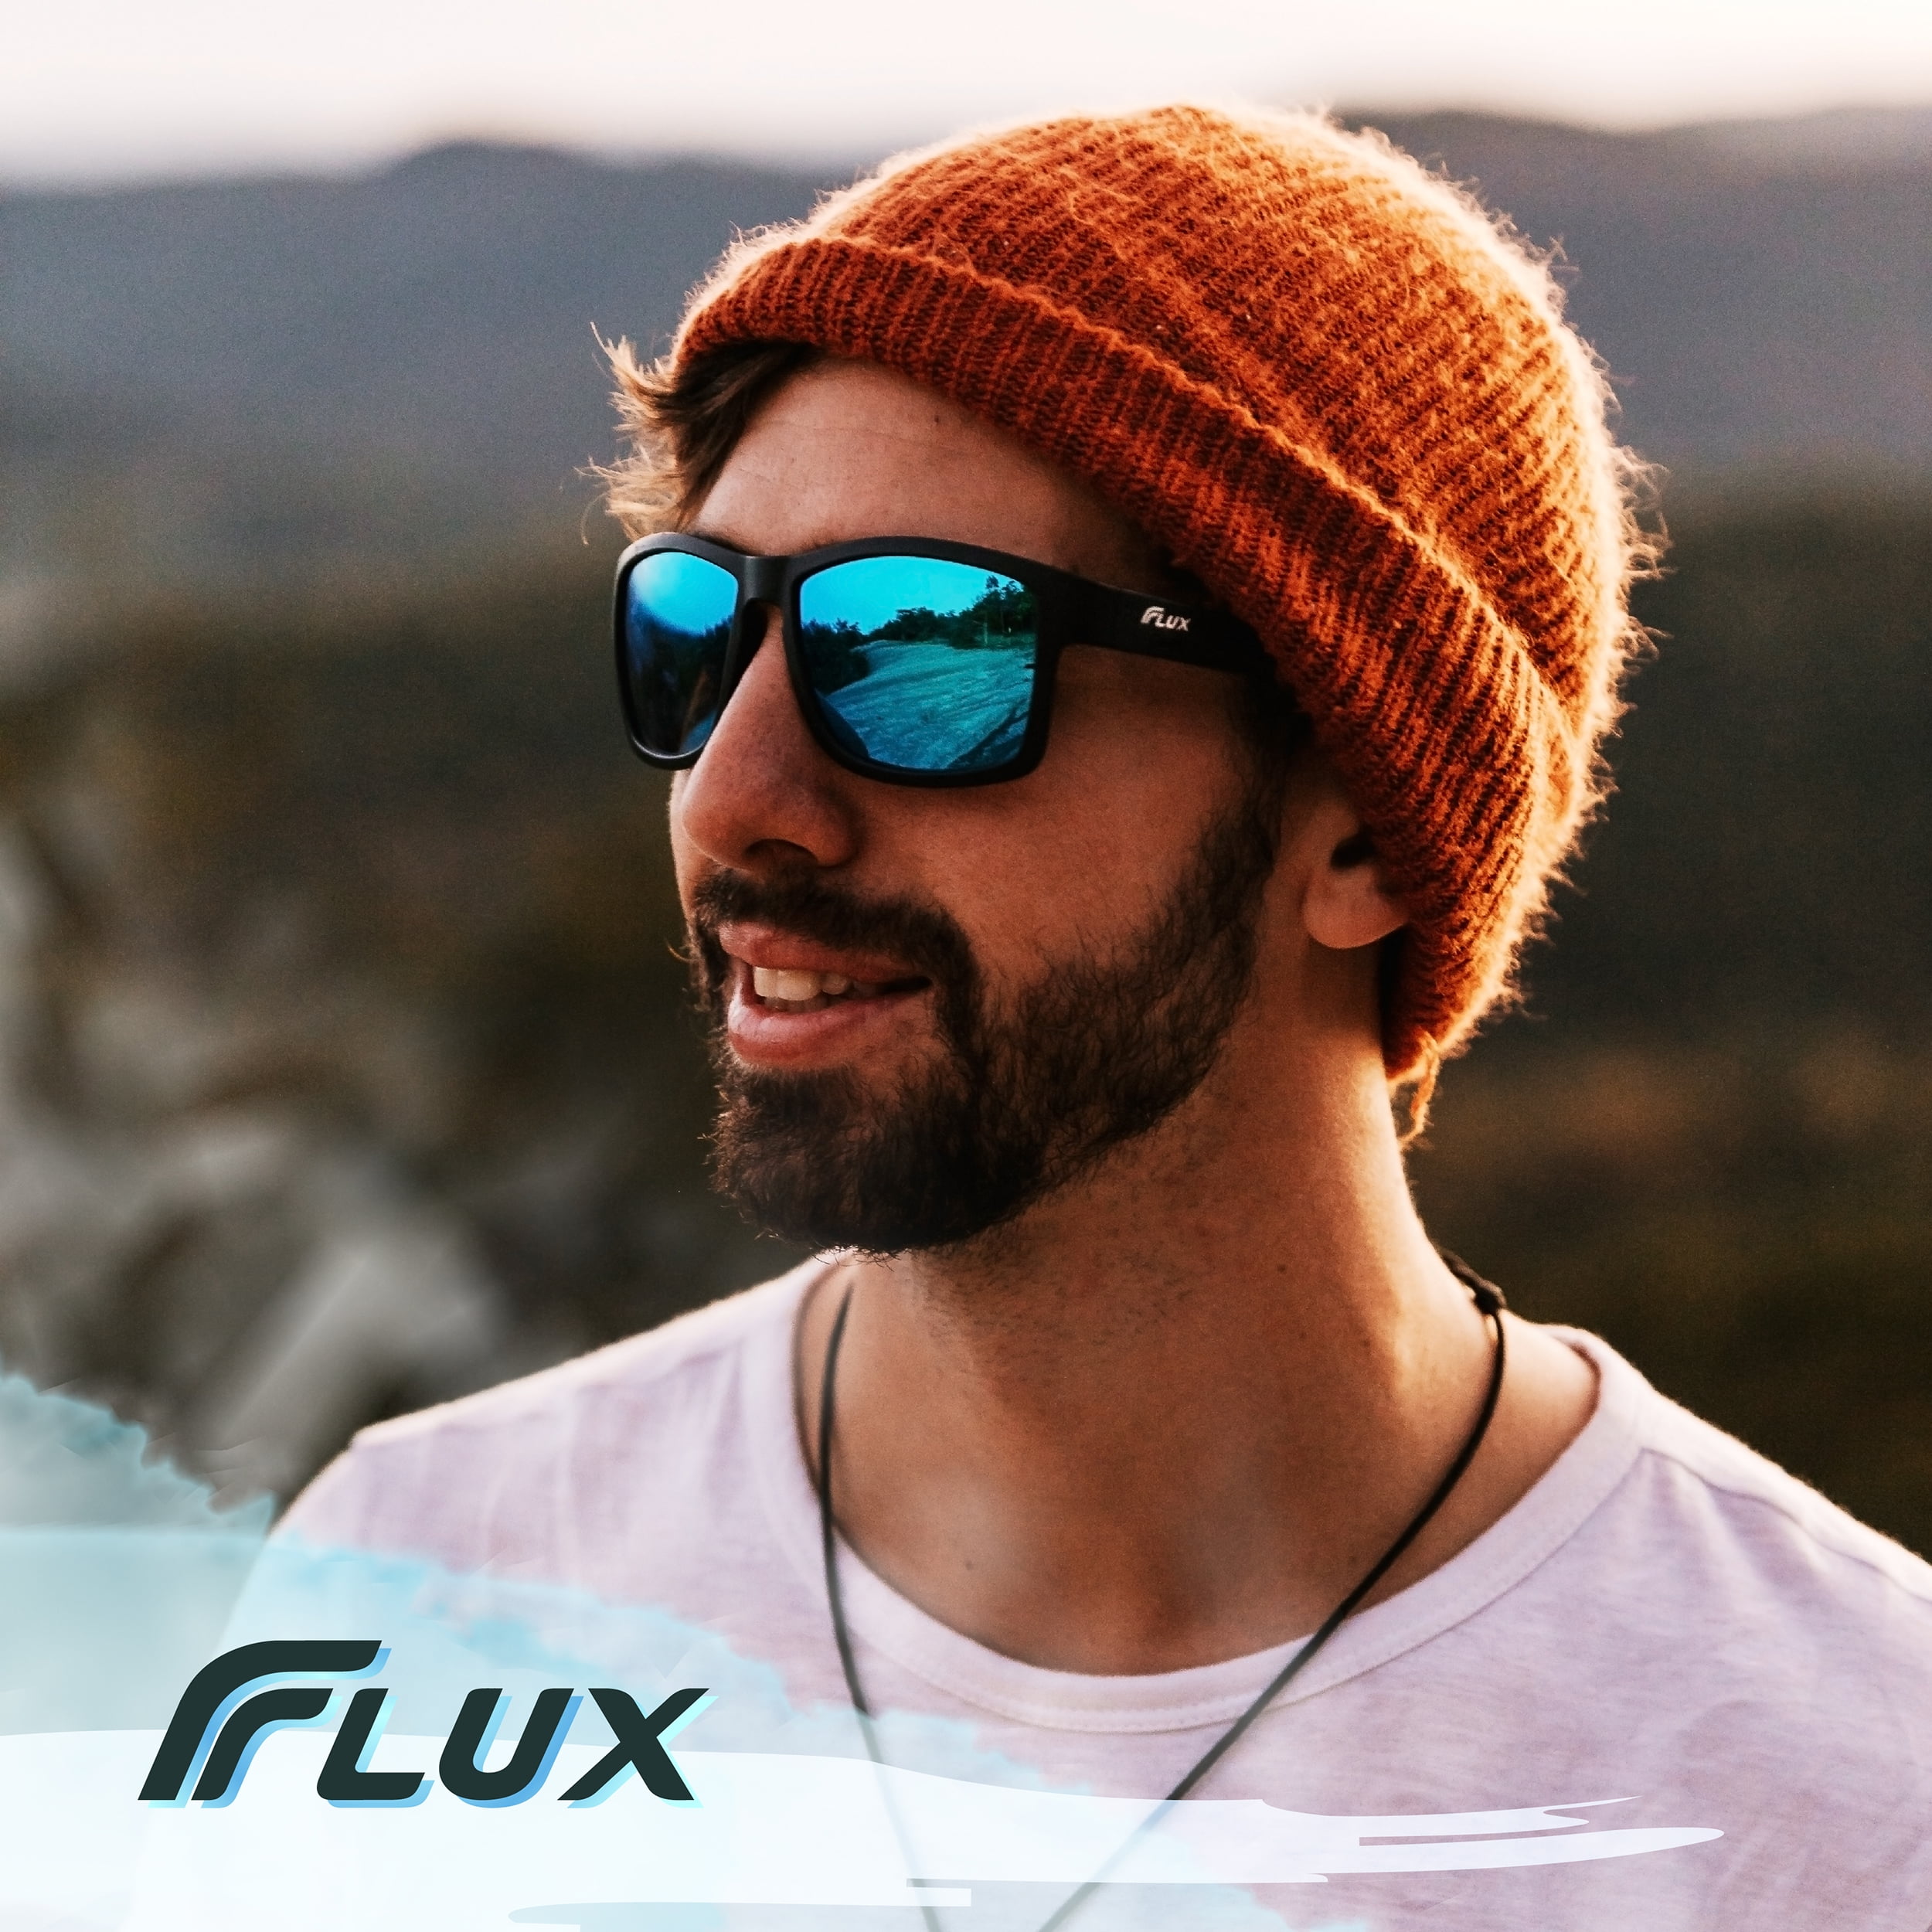 Flux Verano Polarized Sports Sunglasses for Men & Women